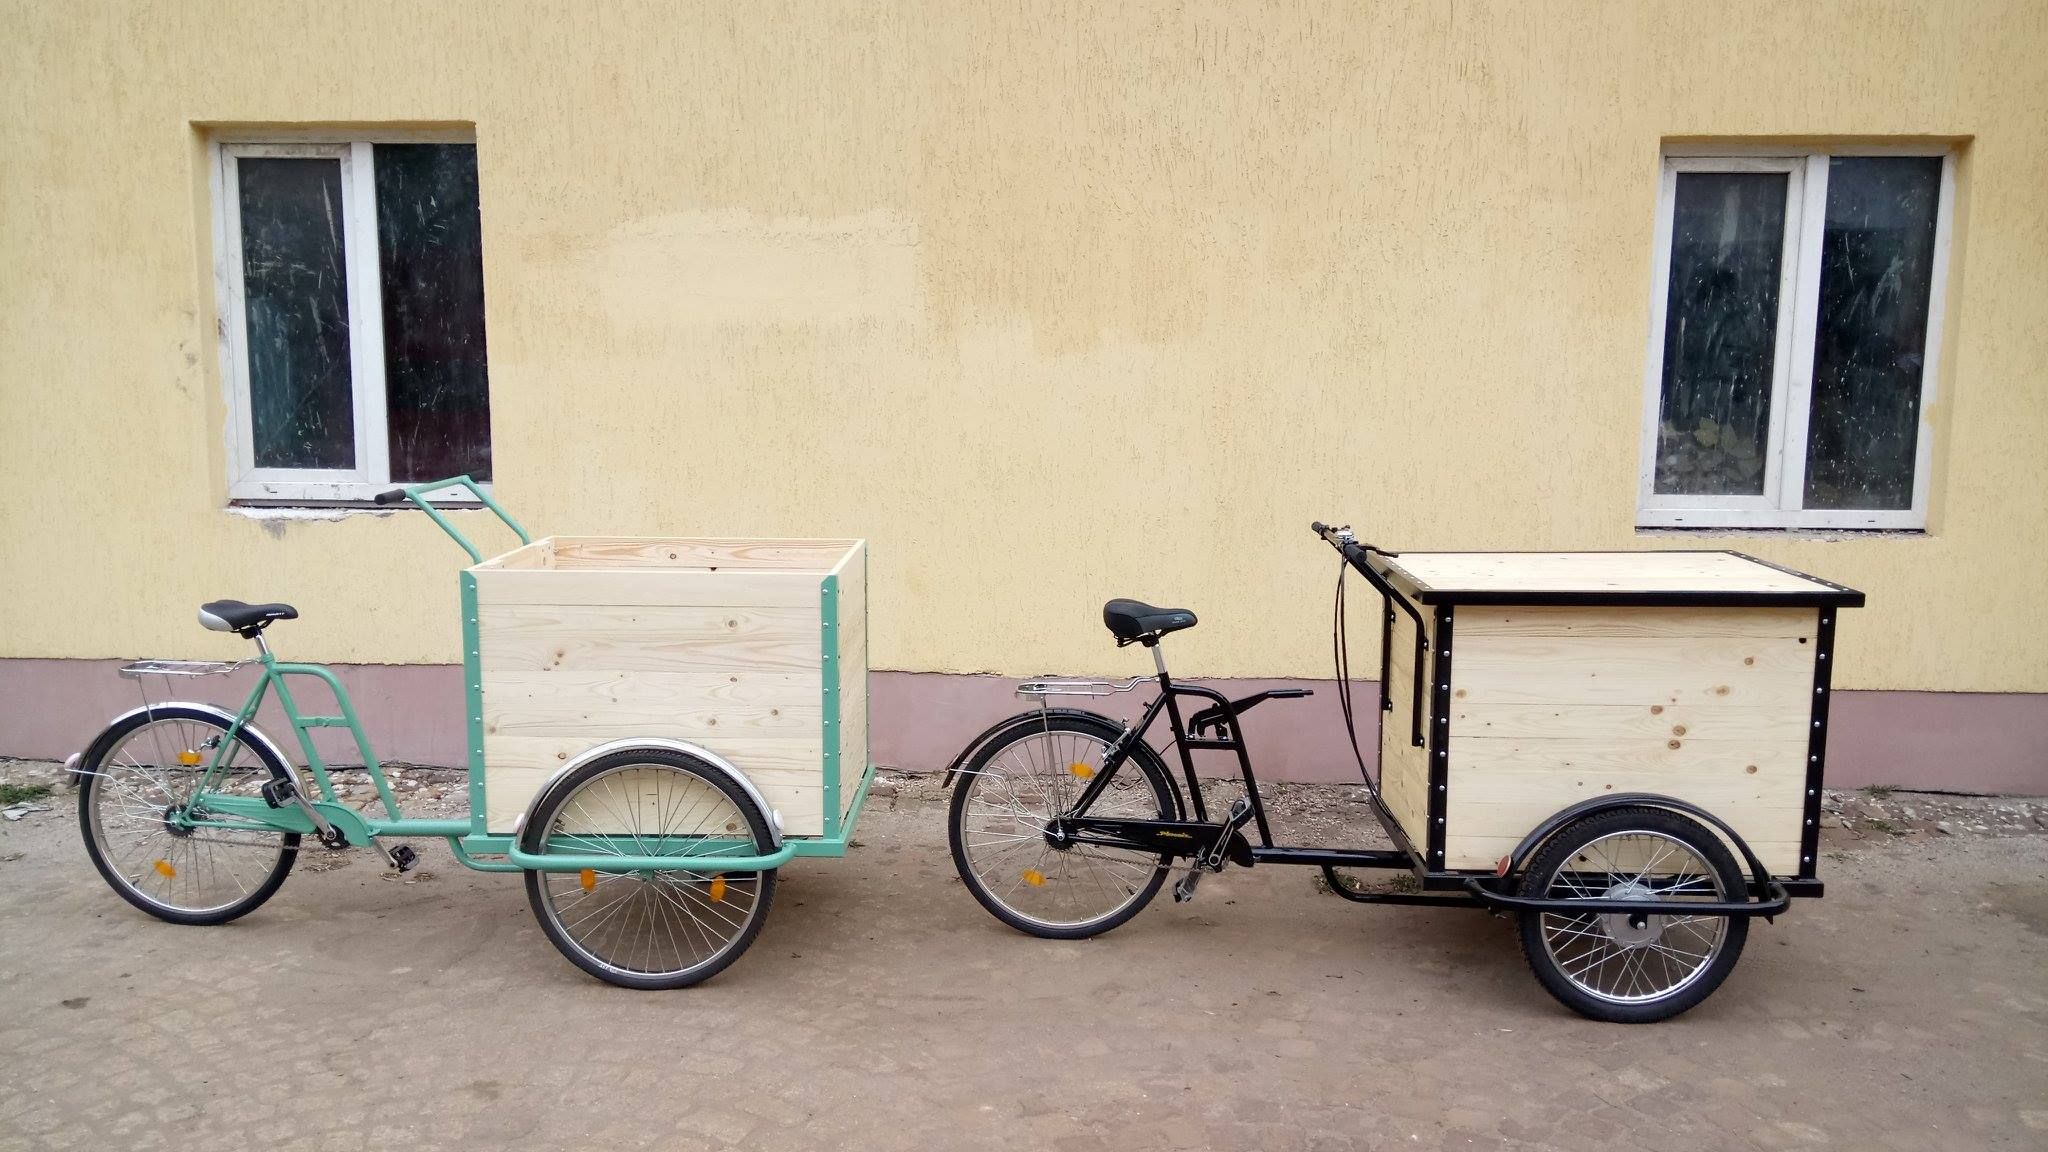 Львовянин создает уникальные велосипеды, которые покупают во всем мире: впечатляющие фото